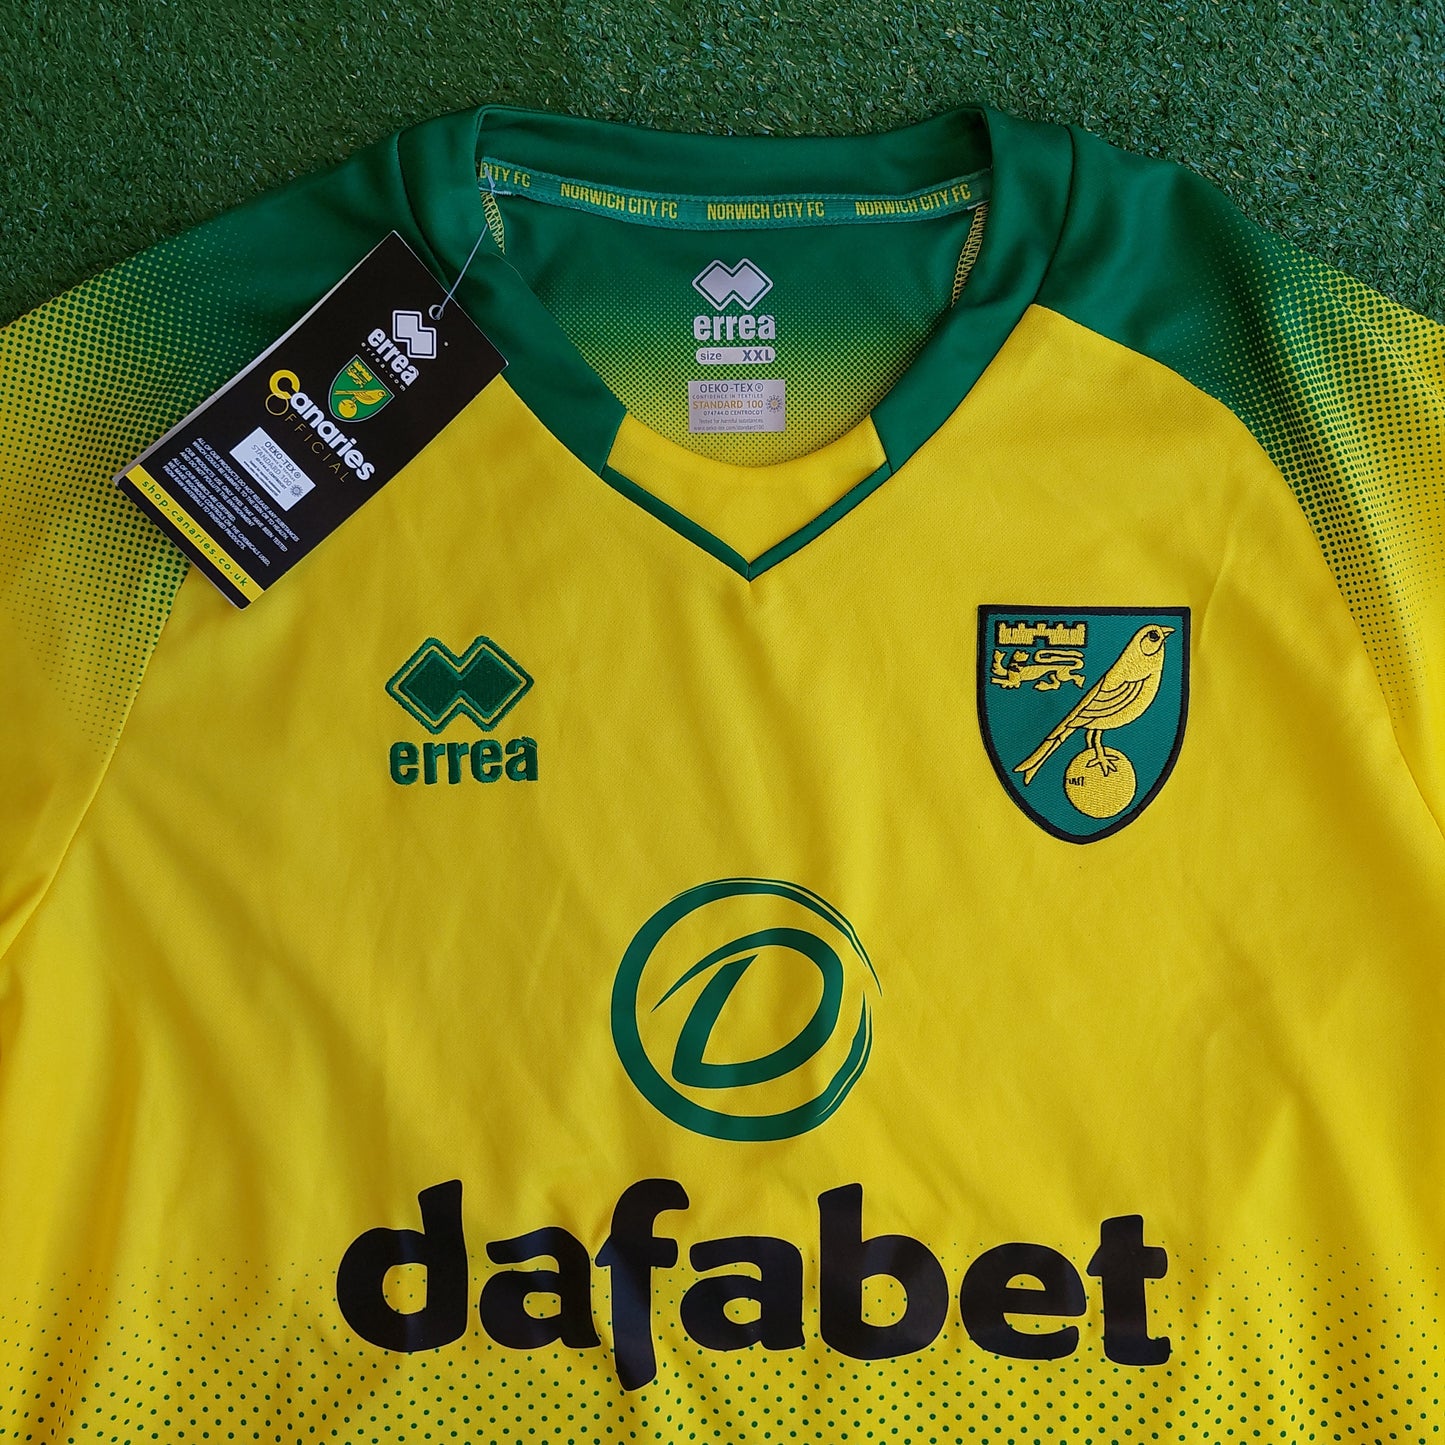 Norwich City 2019/20 Home Shirt (BNWT) - Size XXL